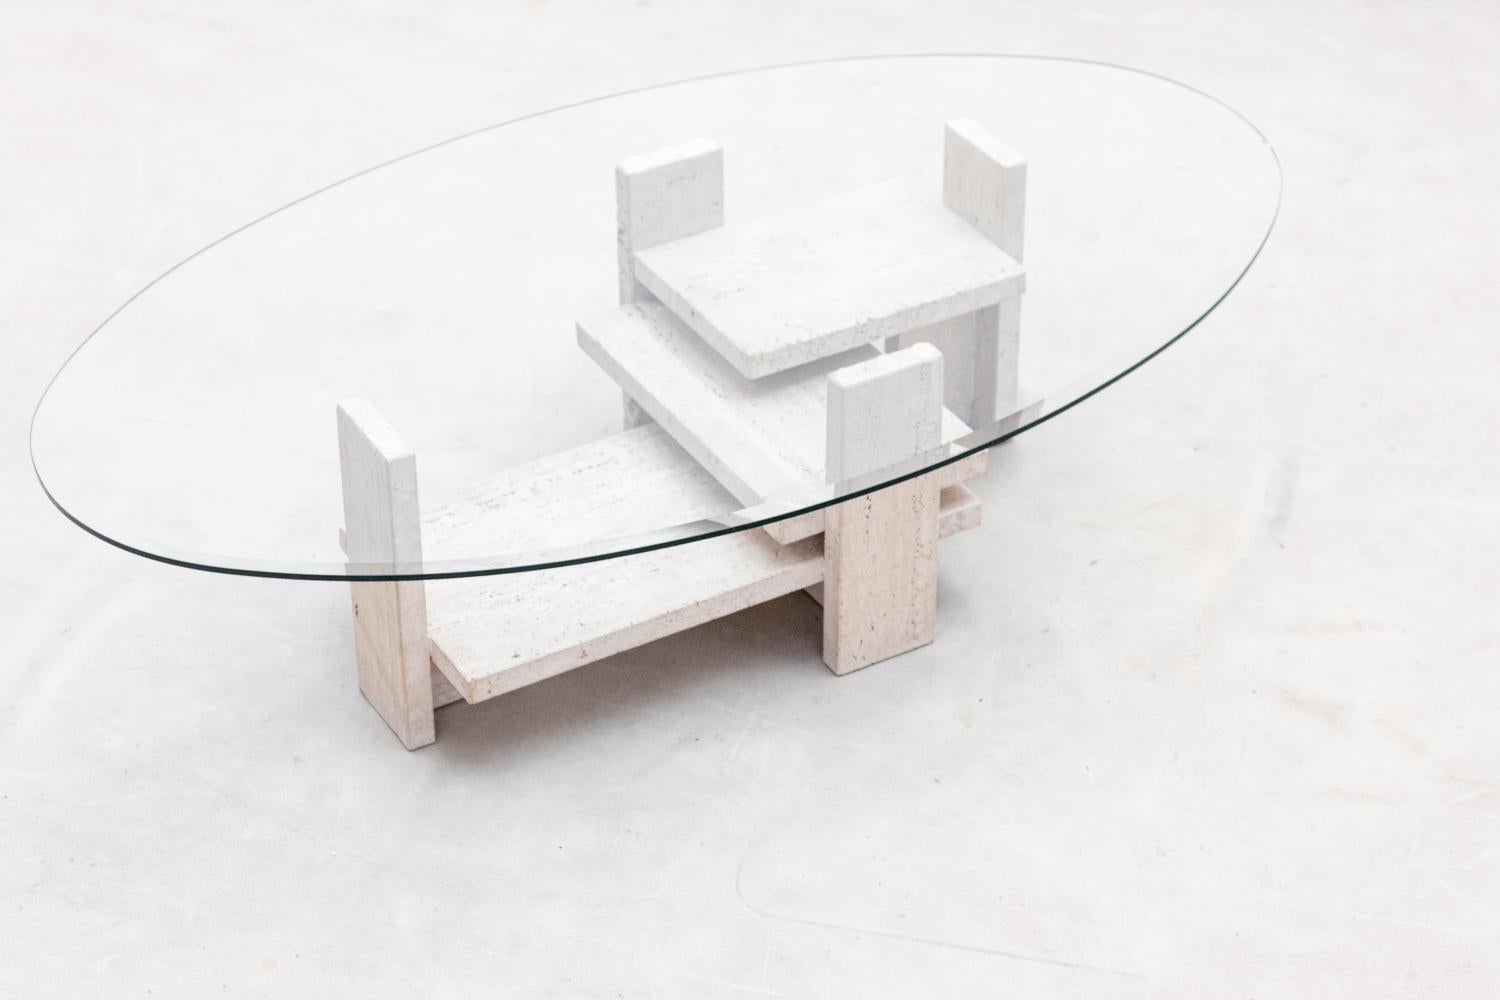 Table basse avec une base architecturale en travertin conçue par le designer belge Willy Ballez dans les années 70. 
La base en travertin est en très bon état. 
Le plateau en verre a un éclat sur le bord ( voir photo), nous pouvons remplacer le